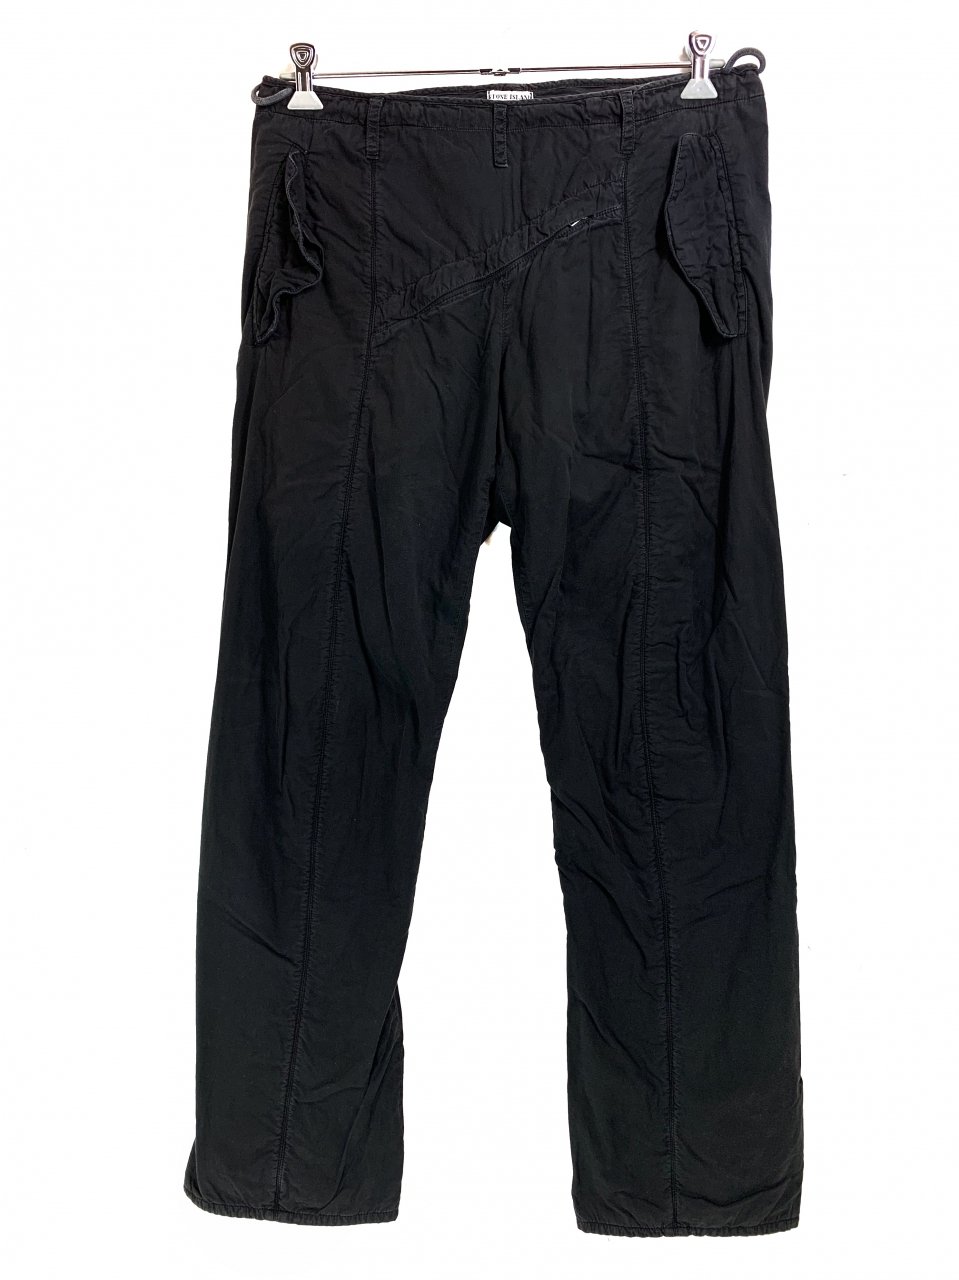 イタリア製 00s STONE ISLAND Cotton Pants 黒 44 ストーンアイランド パンツ コットン イージーパンツ 斜めジップ  ブラック ART 97153604/1399 - NEWJOKE ONLINE STORE